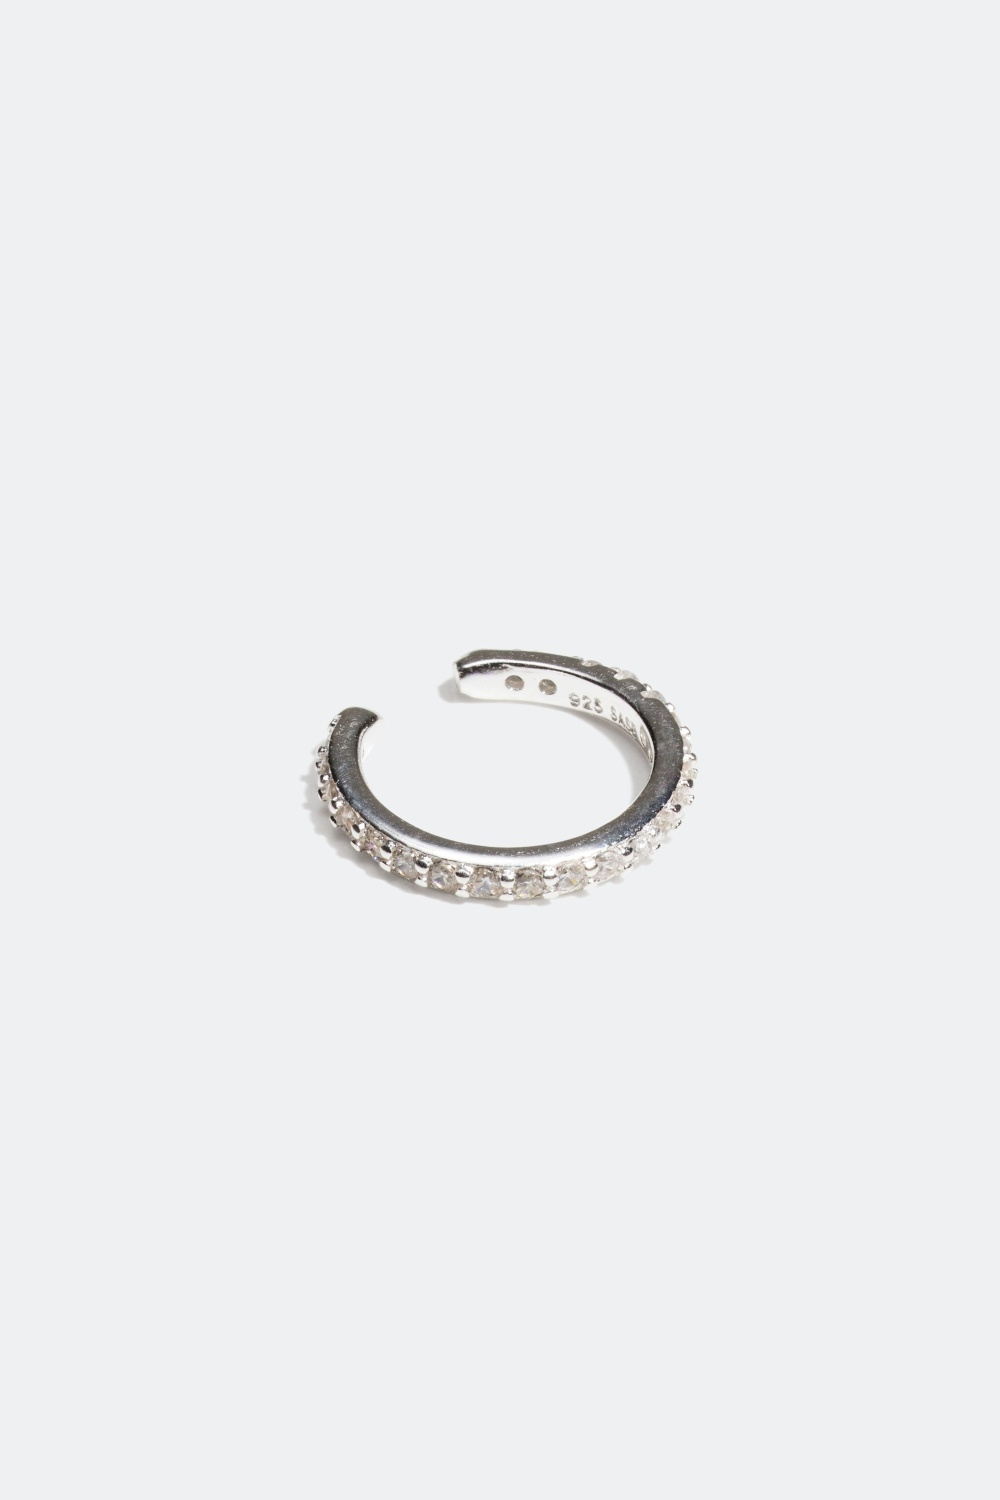 Ear cuff i ægte sølv med Cubic Zirconia sten i gruppen Smykker / Øreringe hos Glitter (326535011000)